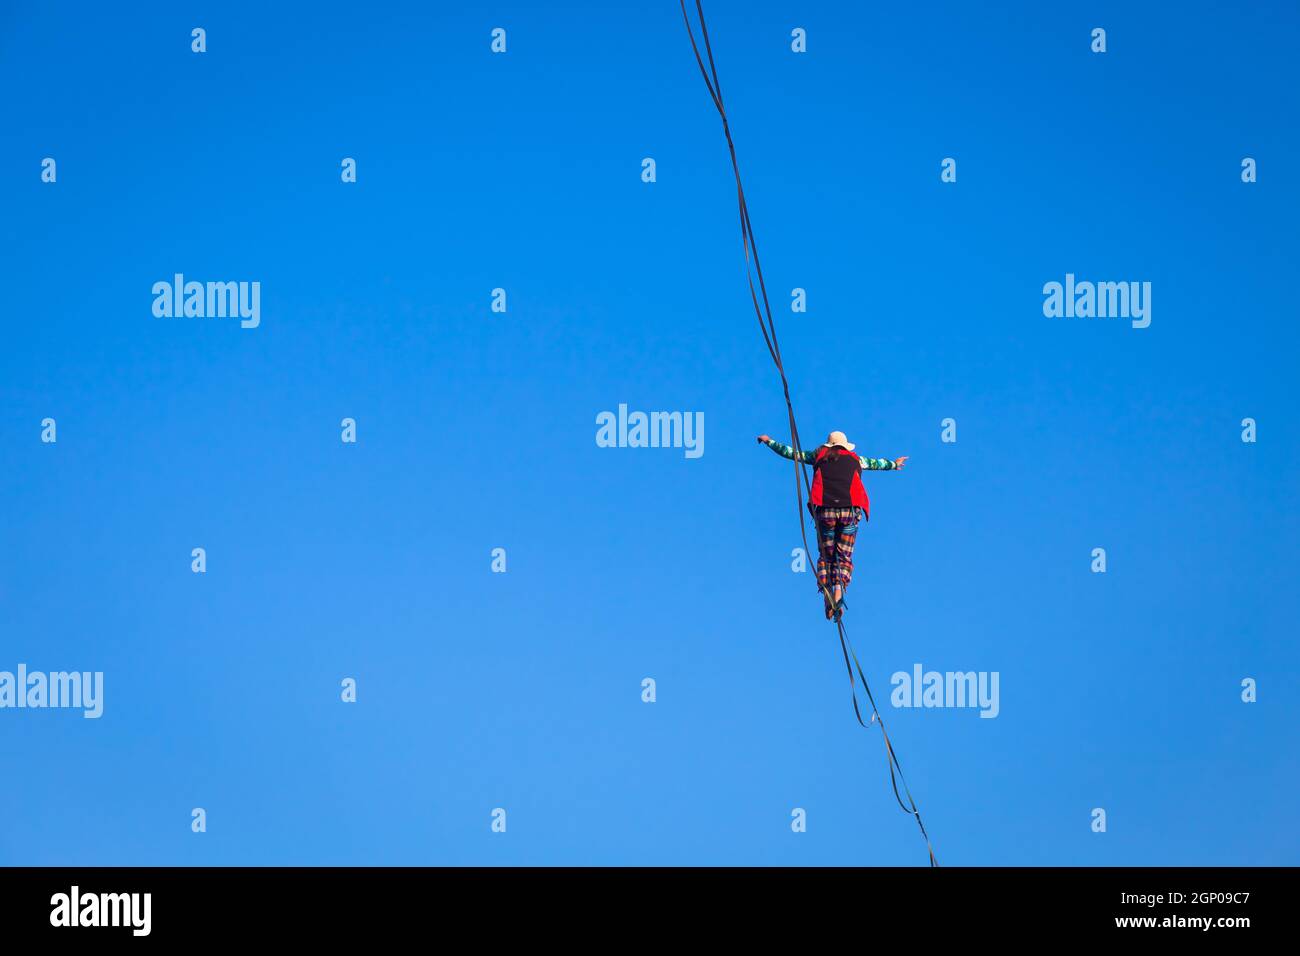 LANZO, ITALIEN - CA. OKTOBER 2020: Slackline-Athlet während seiner Performance. Konzentration, Balance und Abenteuer in diesem dynamischen Sport. Stockfoto